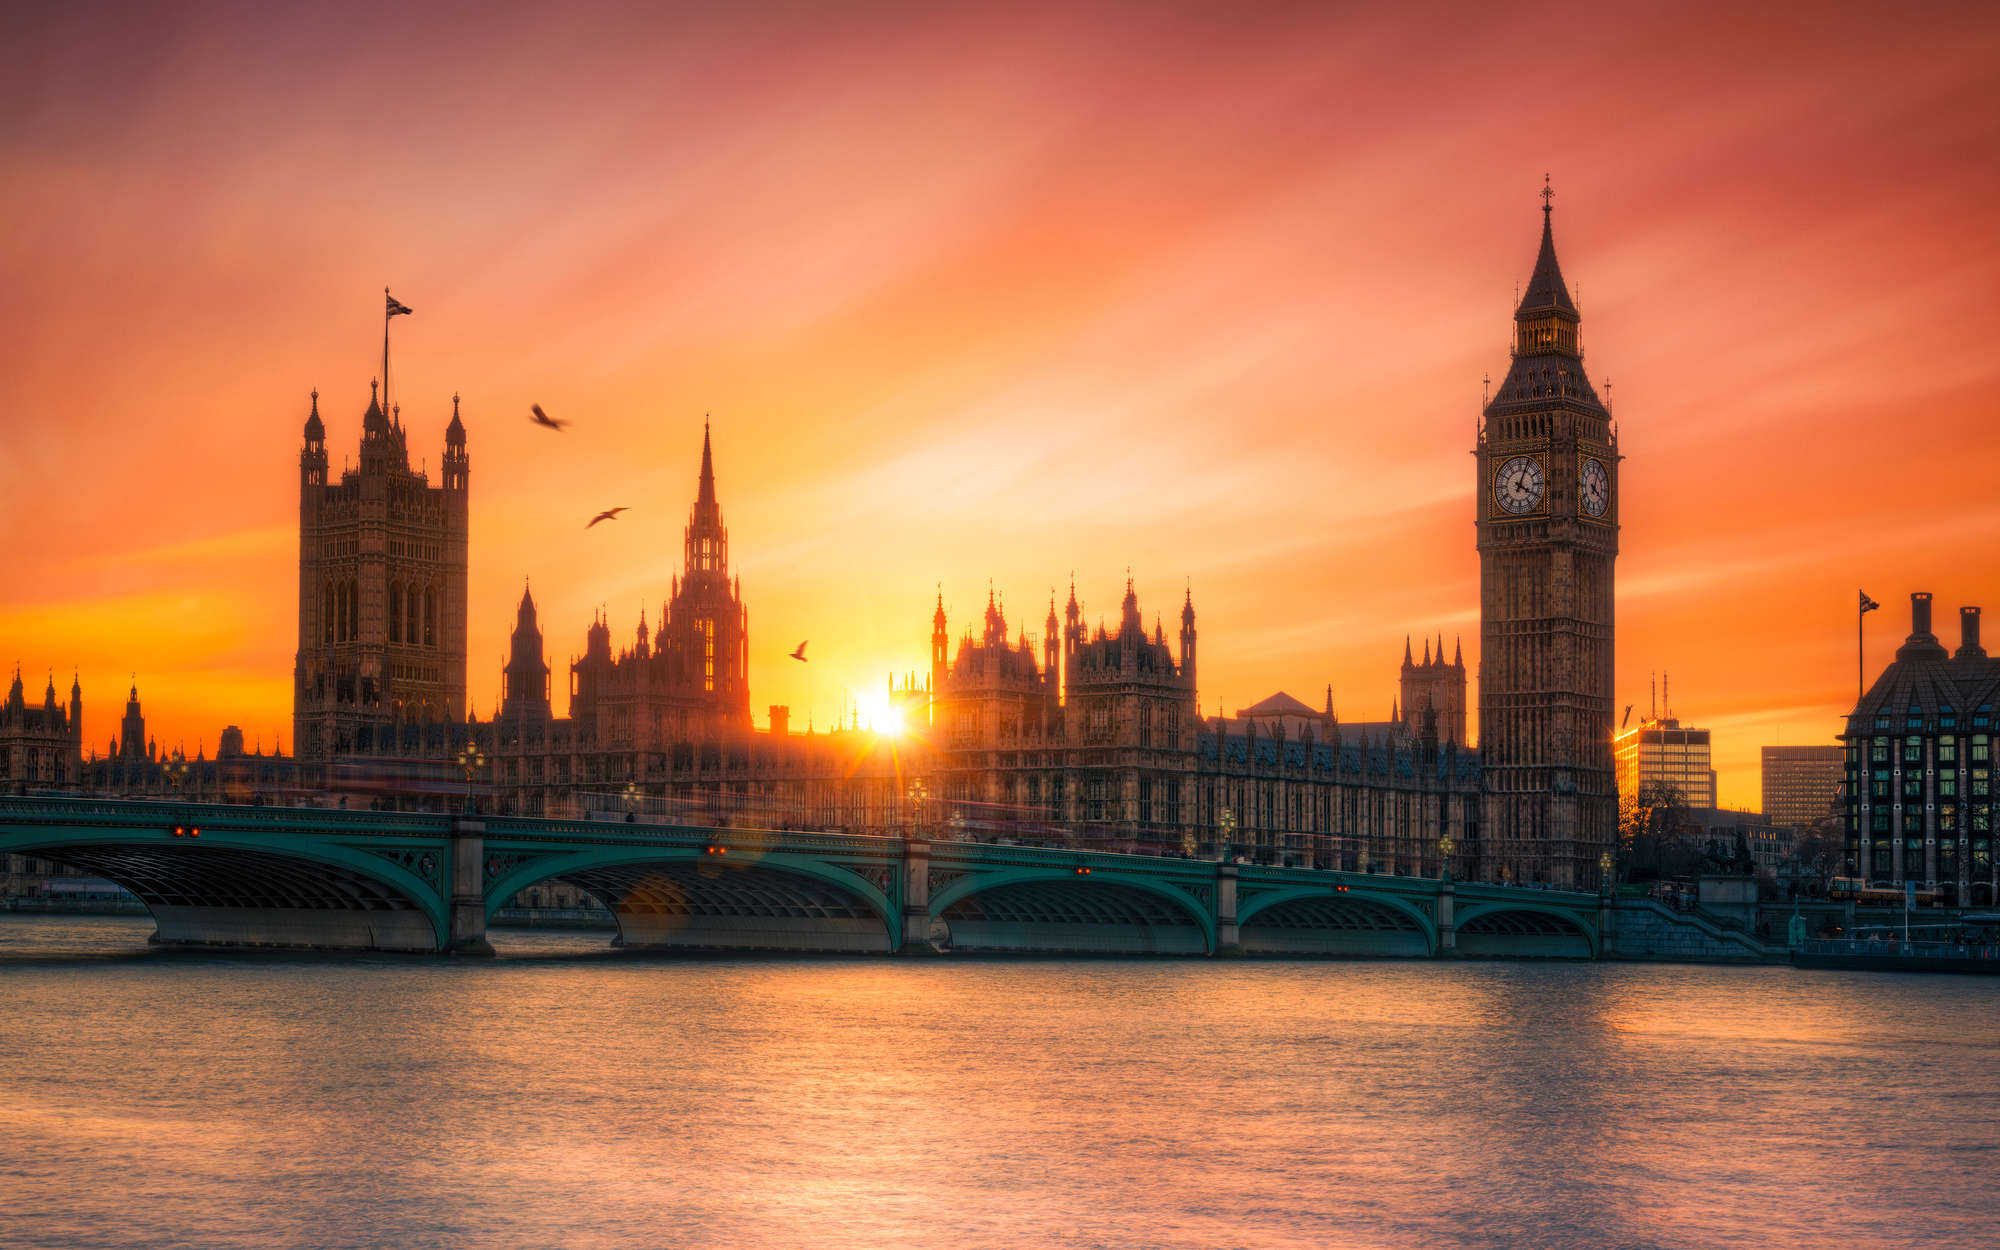             Digital behang Londen Skyline bij zonsondergang - structuurvlies
        